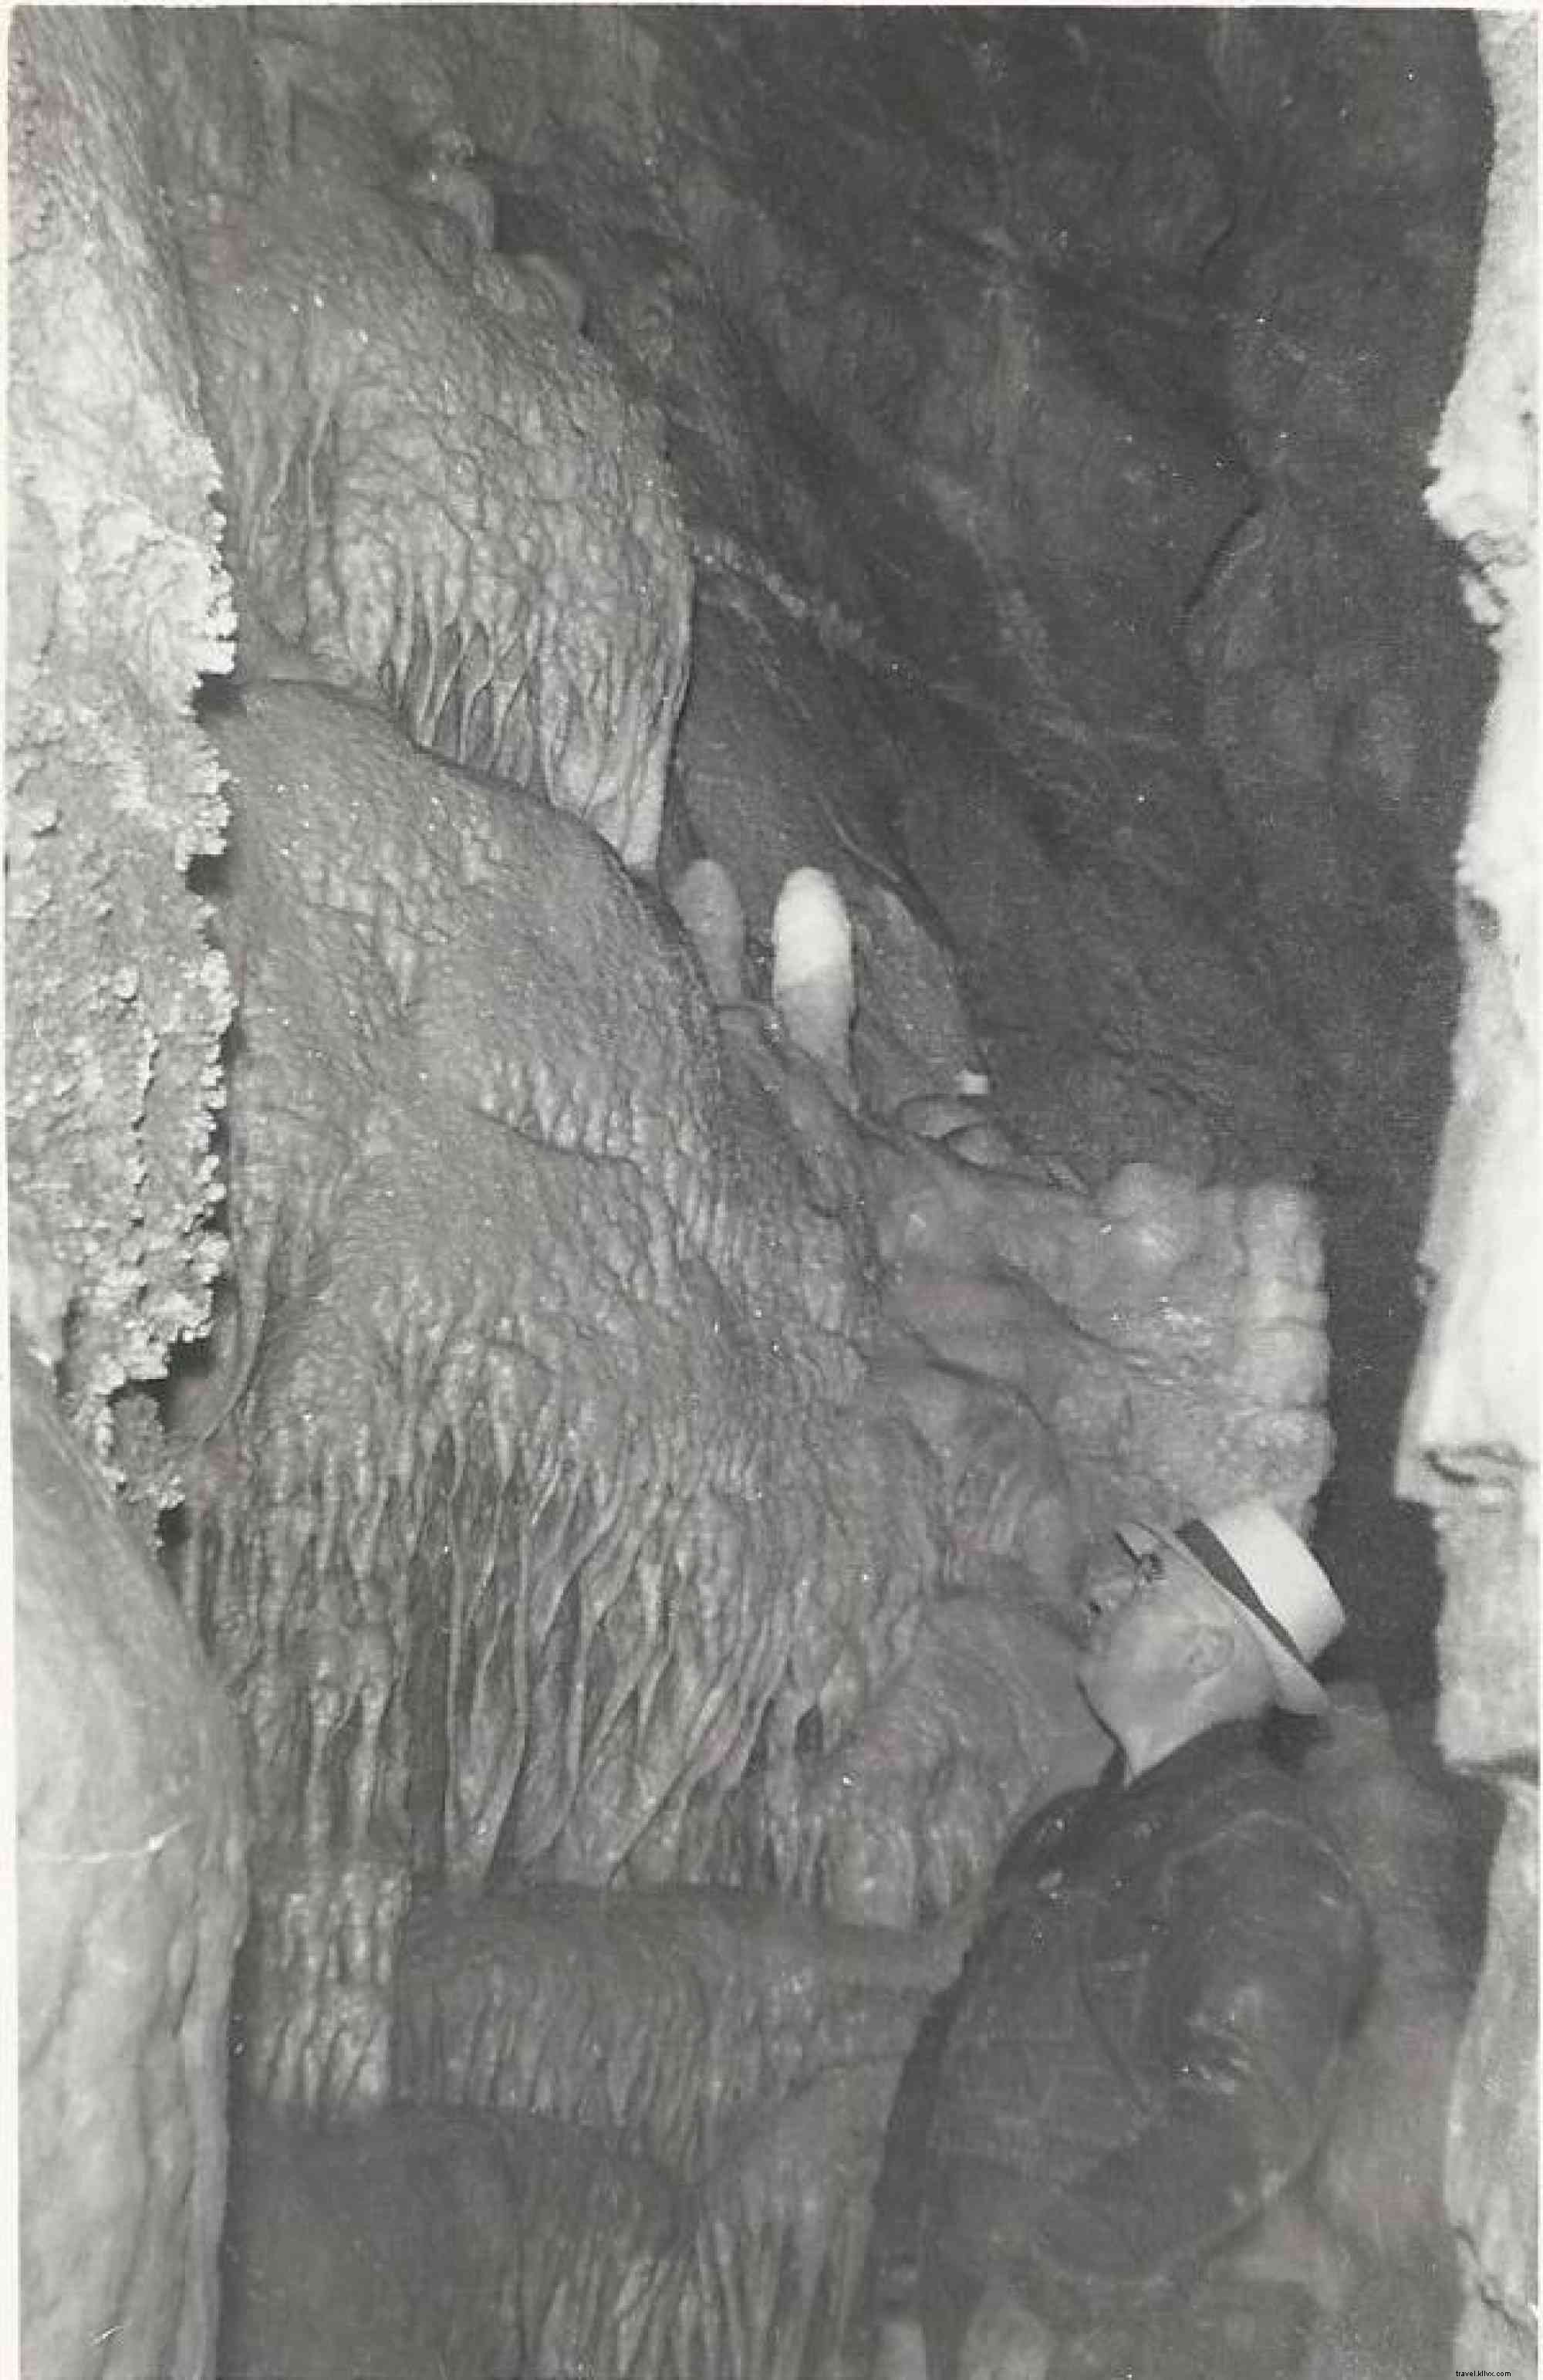 Incoln Caverns comemora 90 anos de descobertas 